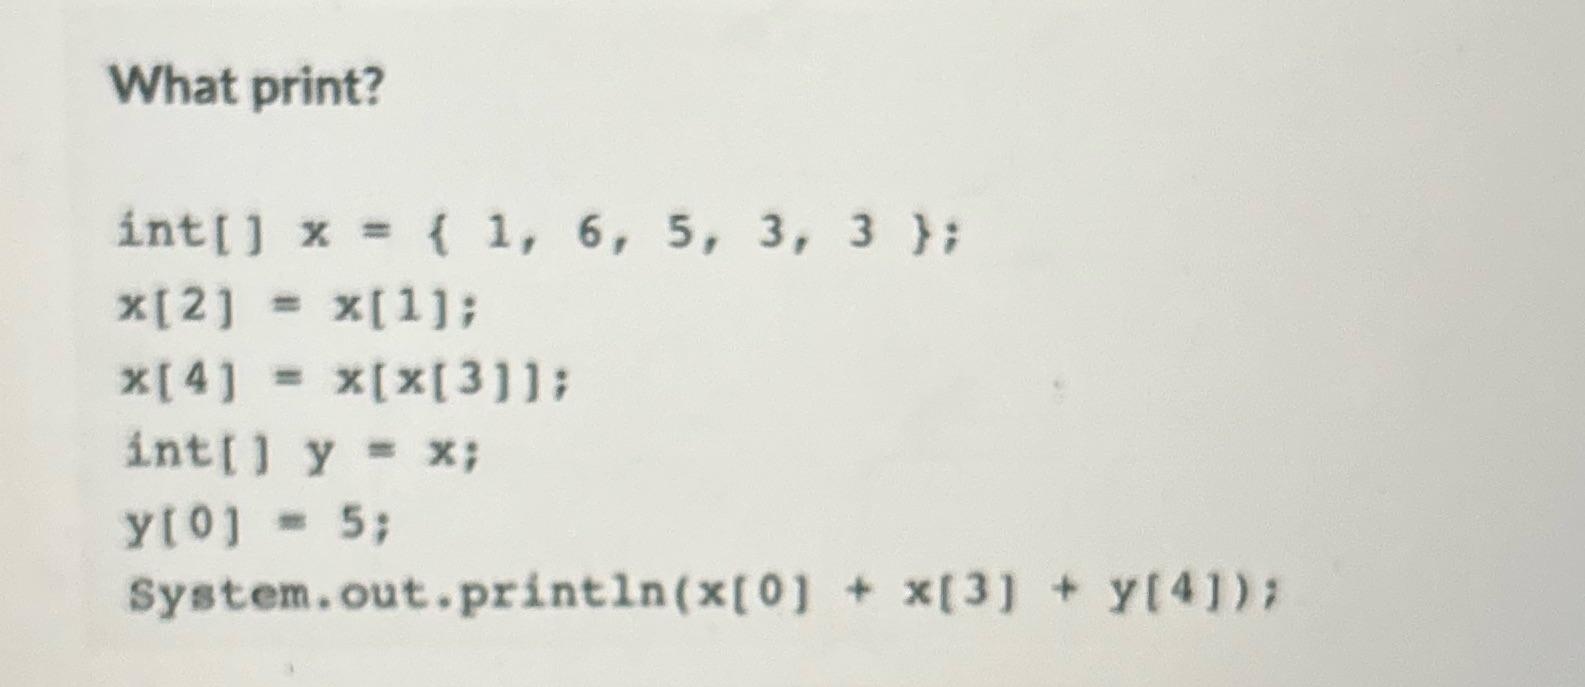 What print? int[] x = { 1, 6, 5, 3, 3 }; *[2] = x[1]; x[4] = x[x[3]]; int[] y = x; y[0] = 5;